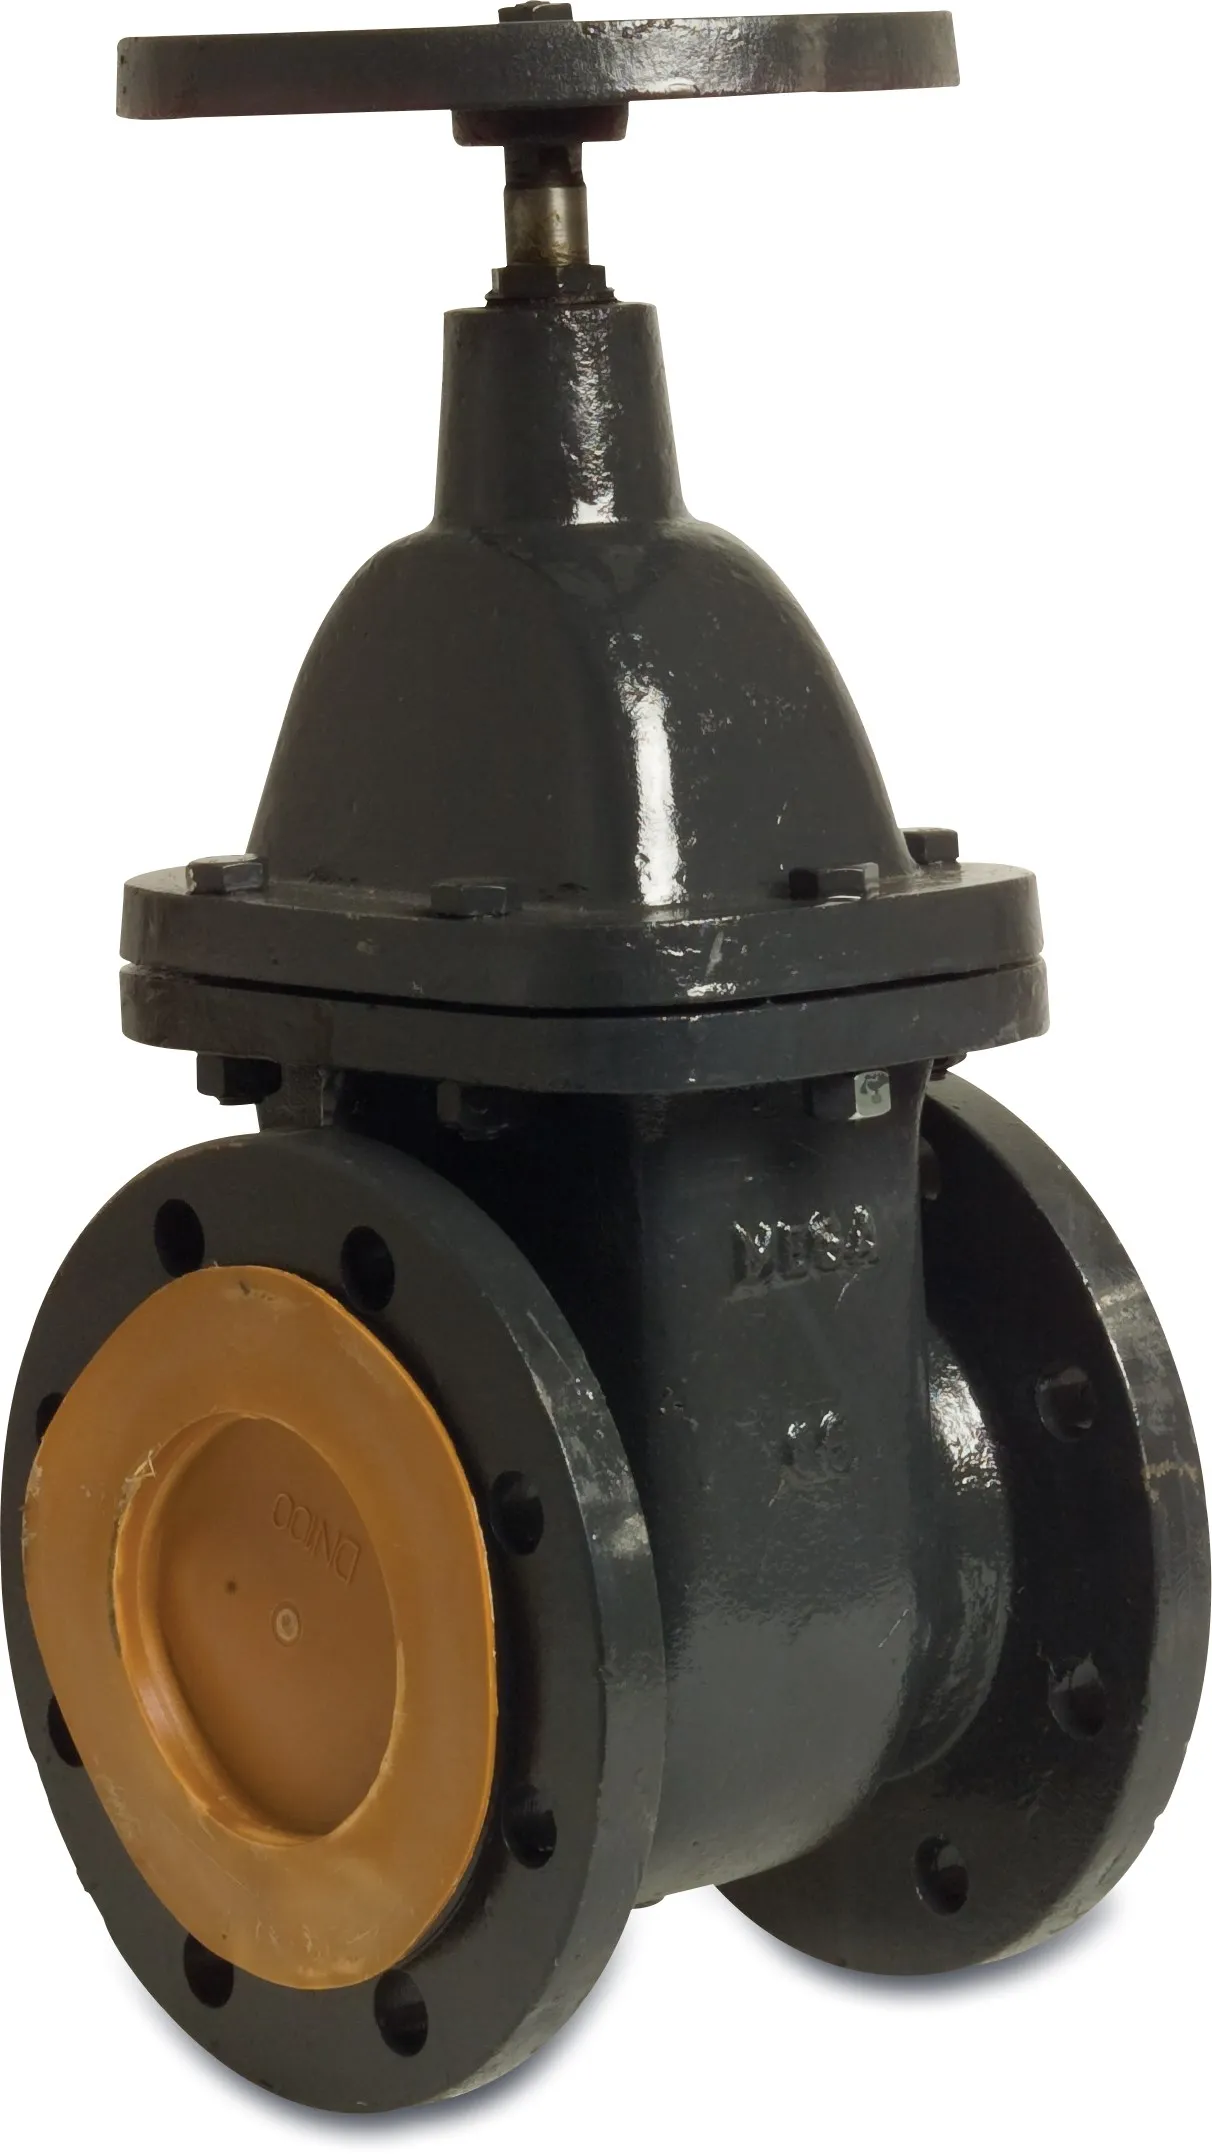 Profec Gate valve cast iron GG 25 varnished DN40 DIN flange 10bar black PN10/16 type 200